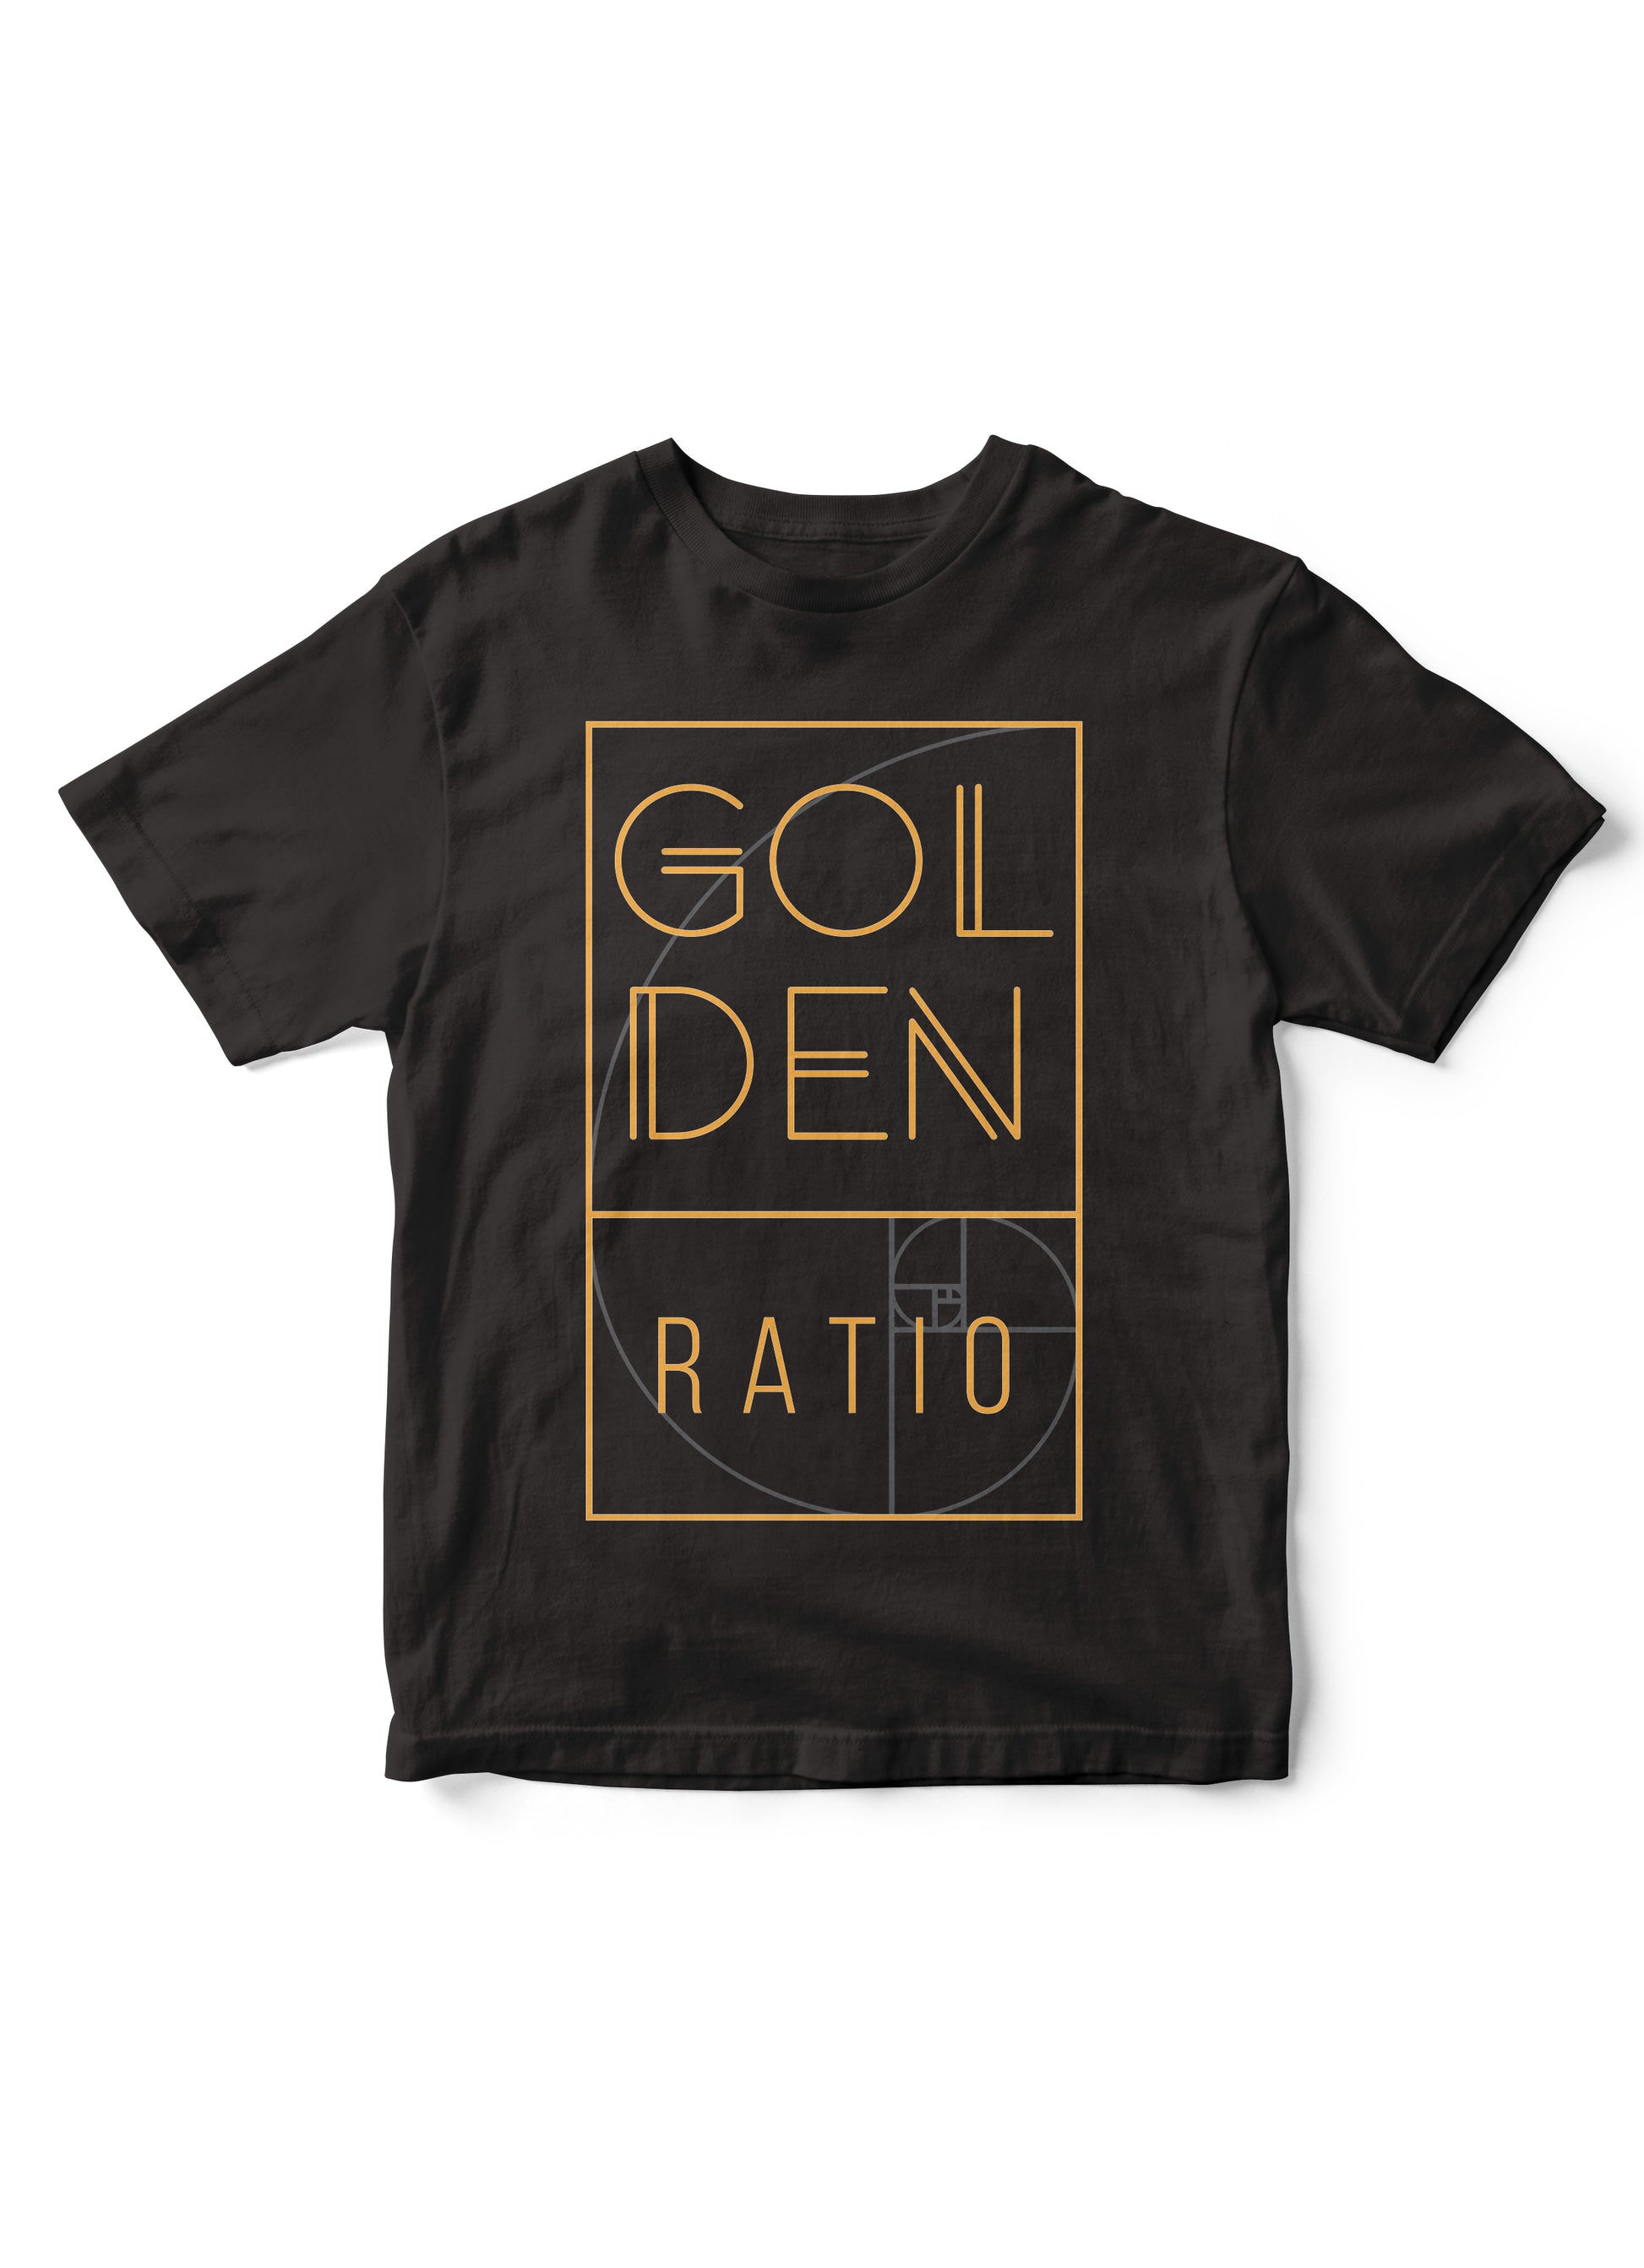 golden ratio tshirt, math tshirt for kids, math tee, kid math tee